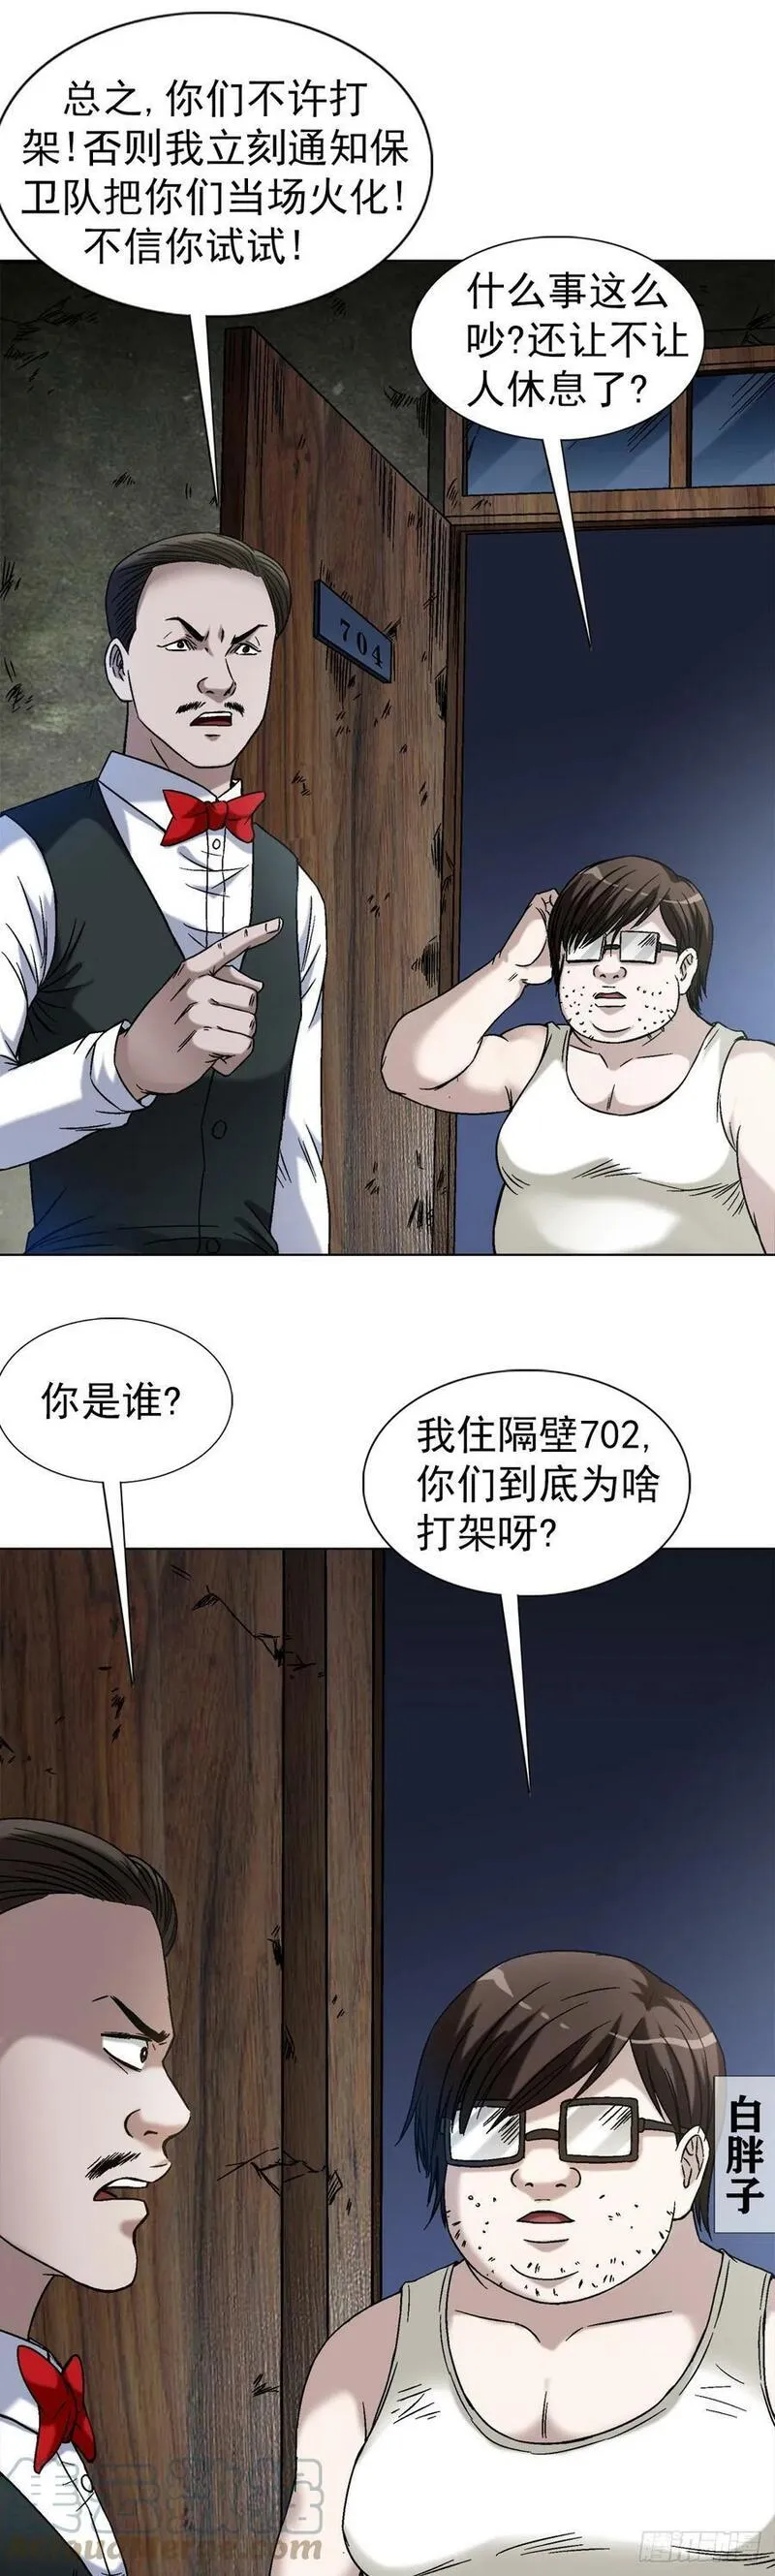 1394 好心人白胖子4